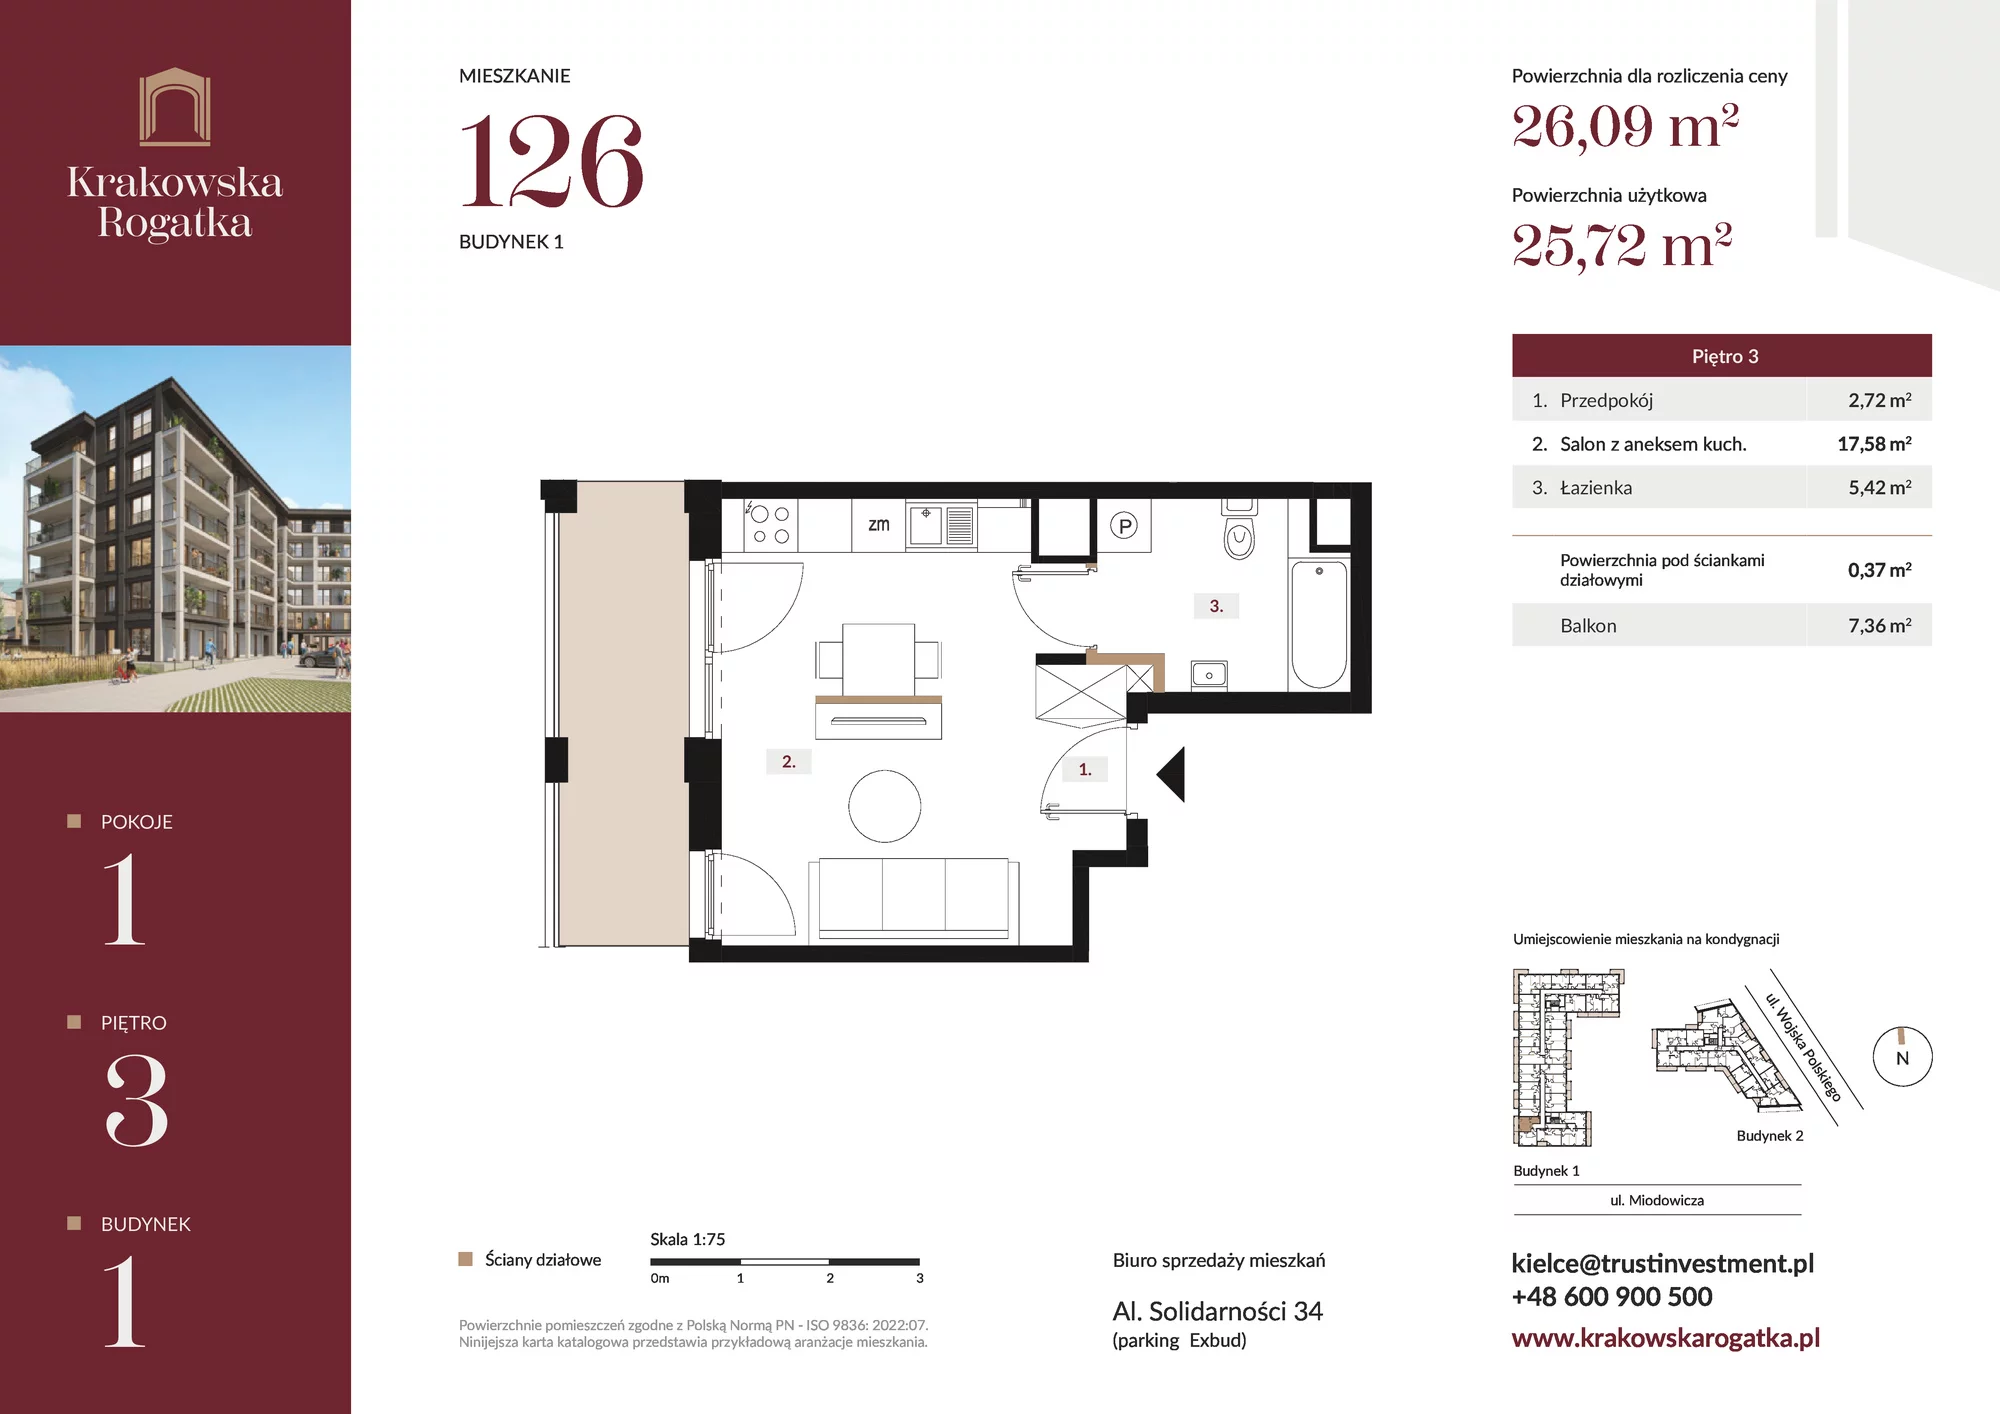 Mieszkanie 26,09 m², piętro 3, oferta nr Budynek 1 Mieszkanie 126, Krakowska Rogatka, Kielce, ul. Miodowicza 1